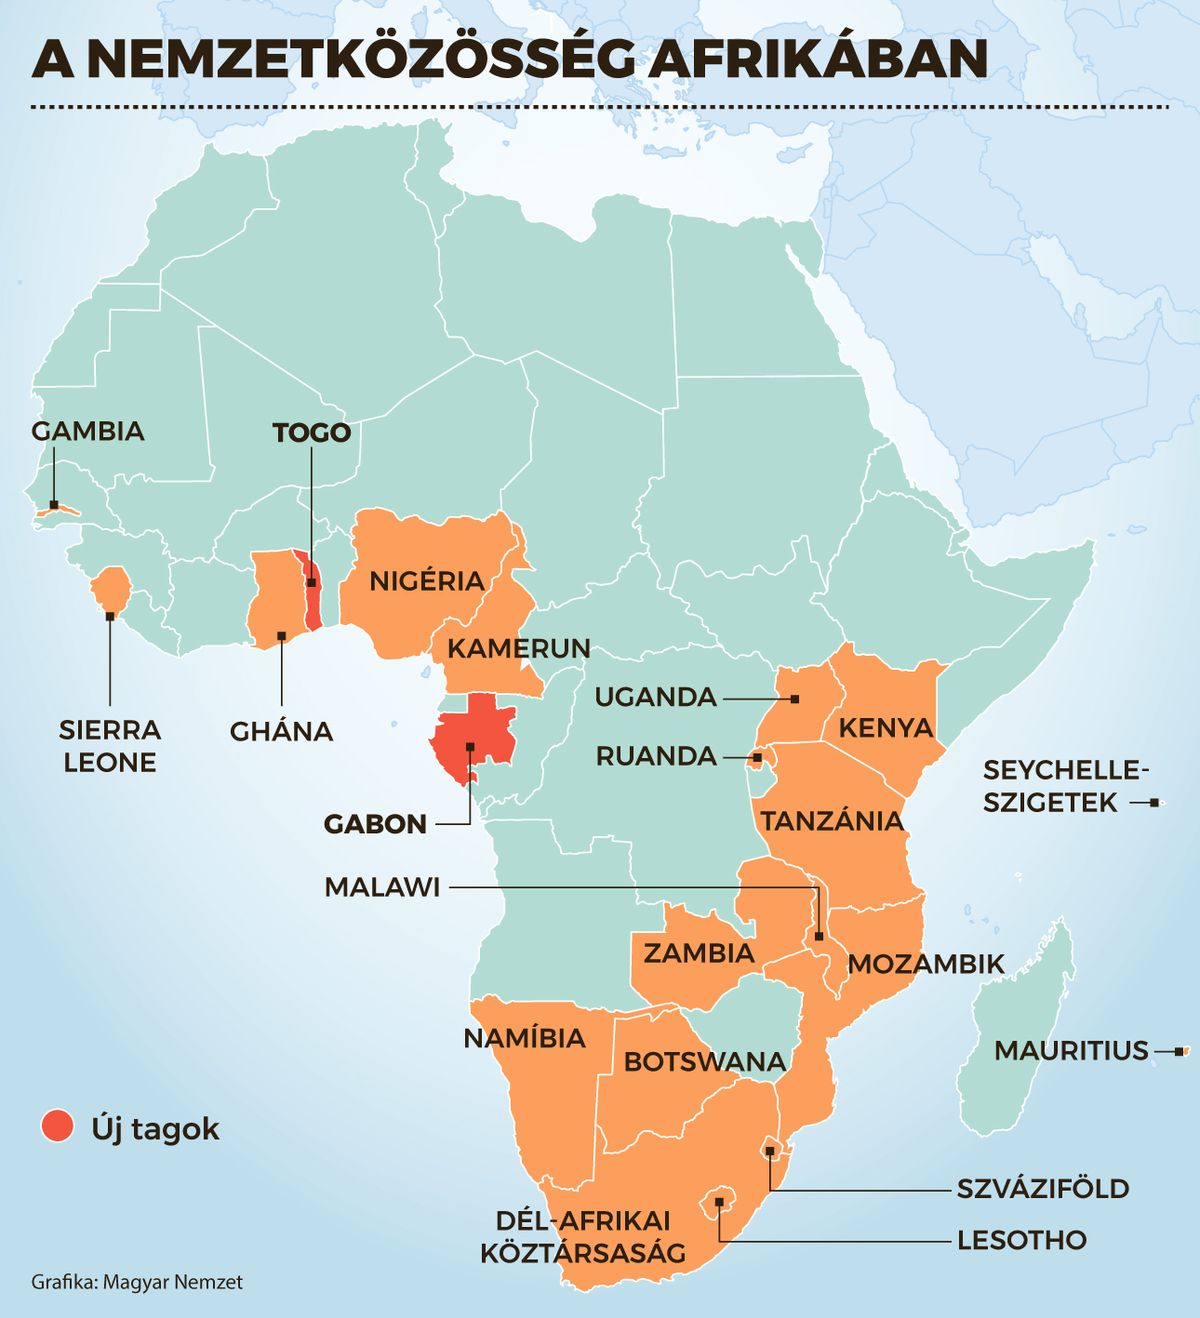 A Nemzetközösség Afrikában térkép.